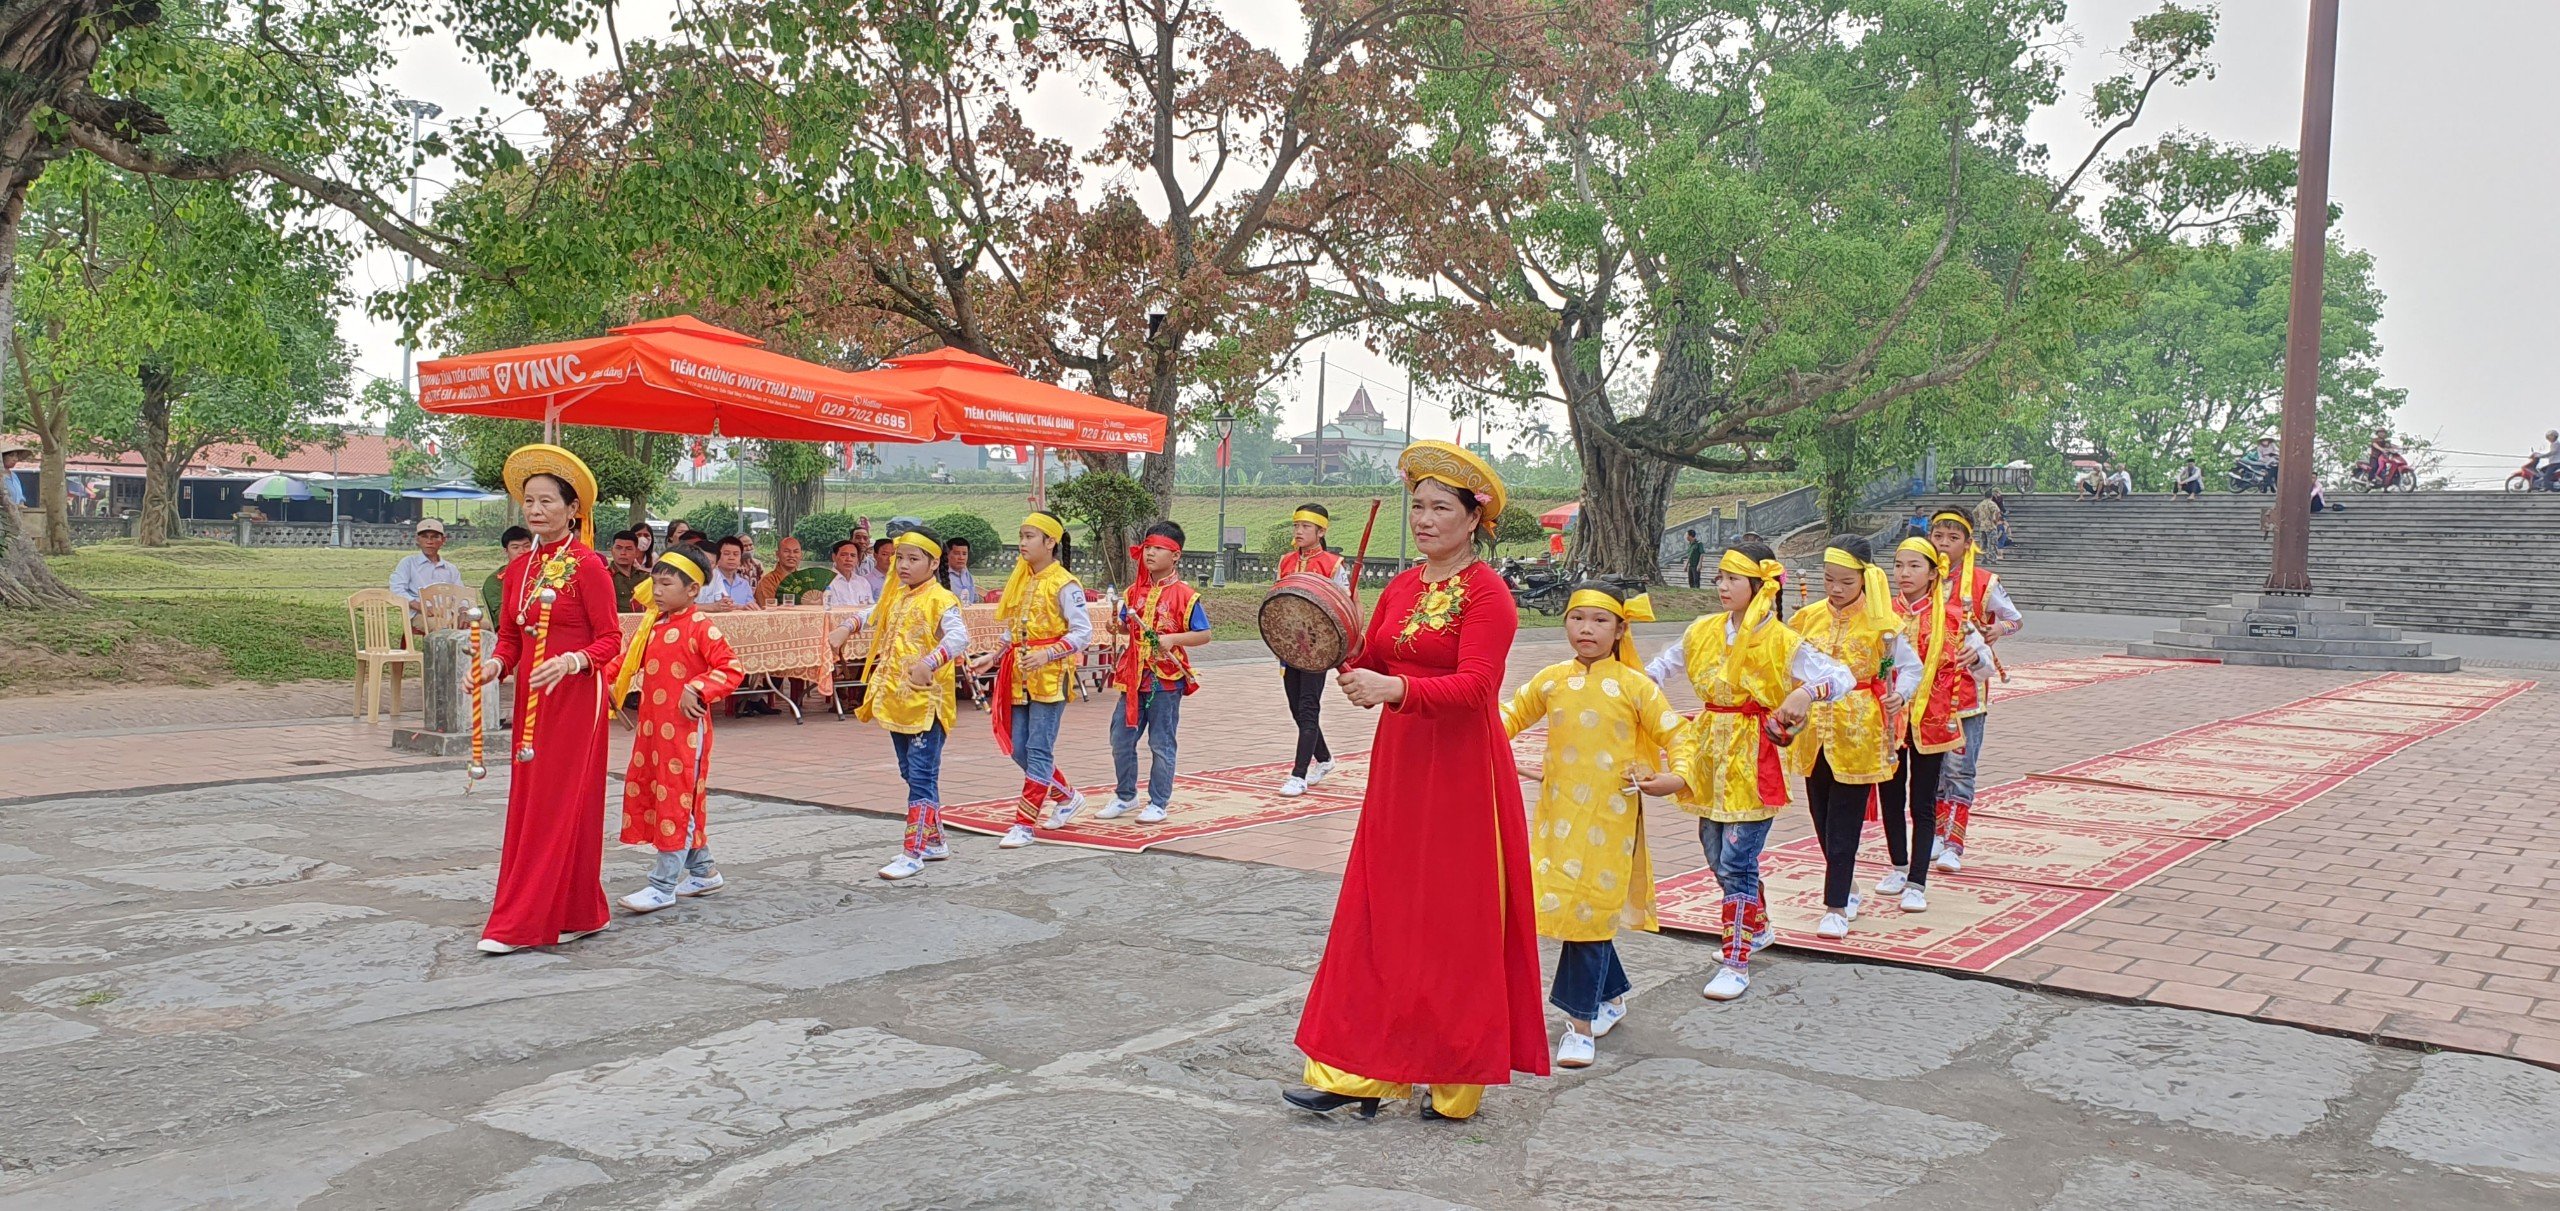 Thái Bình: Nhiều hoạt động đặc sắc tại Chùa Keo dịp lễ 30/4 - 1/5- Ảnh 2.